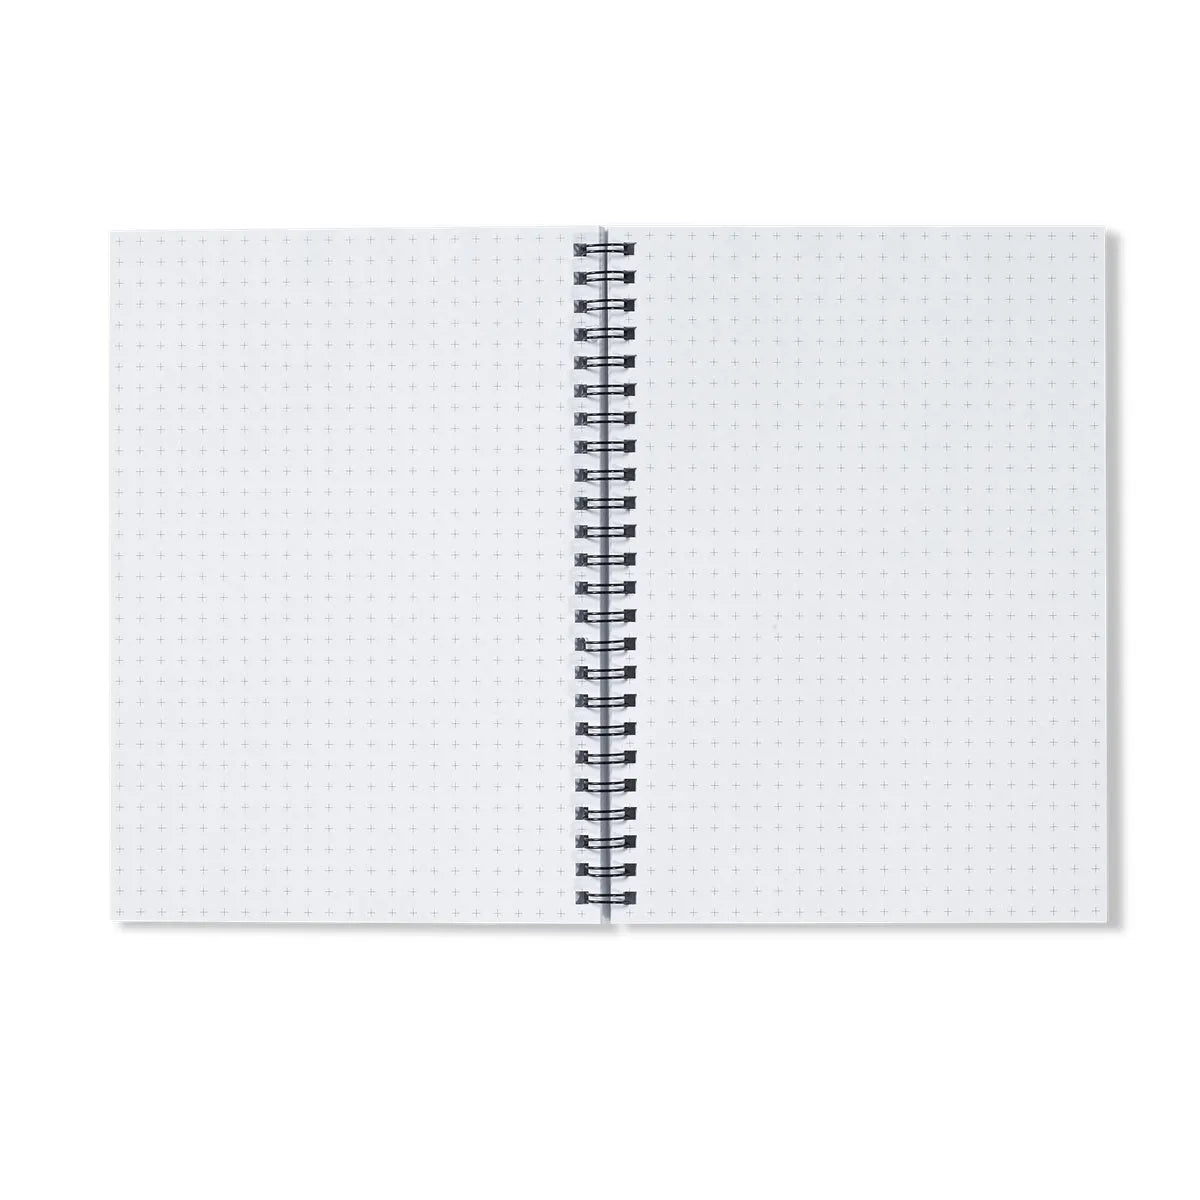 Greyhound By Moriz Jung Notebook - Notebooks & Notepads - Aesthetic Art